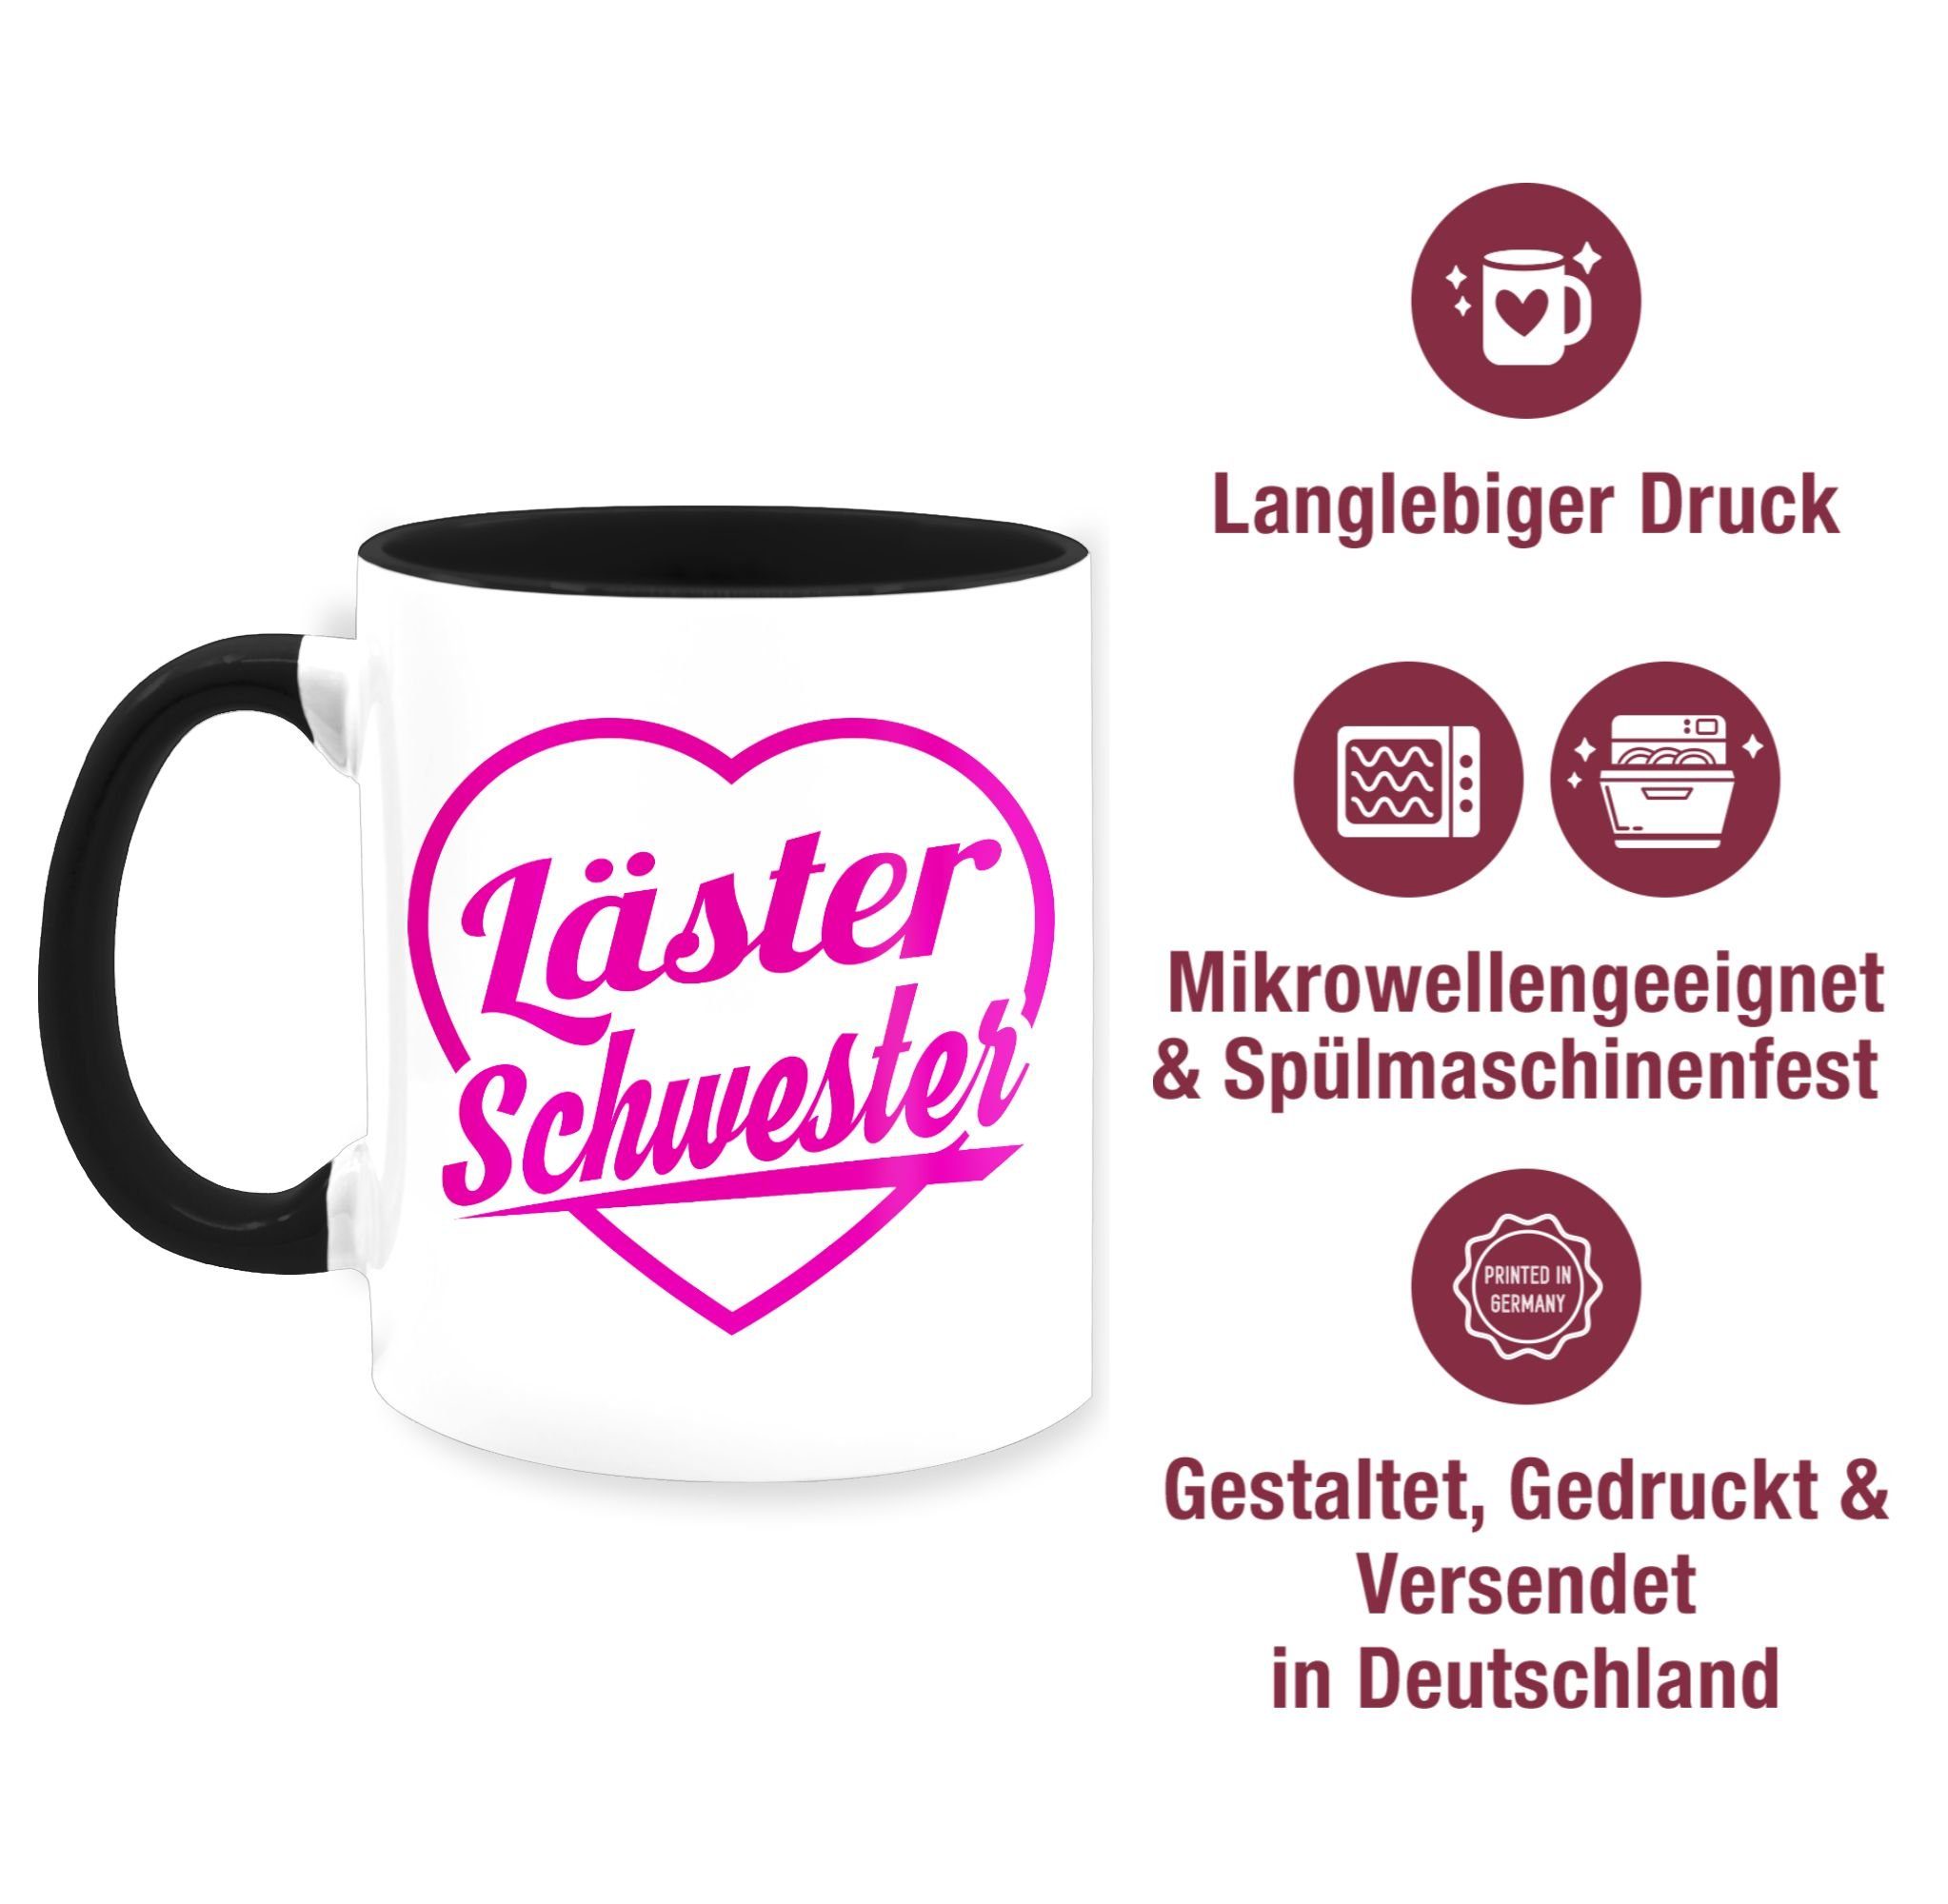 Shirtracer Tasse Läster Schwester 2 Schwester Bruder - Keramik, Schwarz fuchsia, & Kaffeetasse